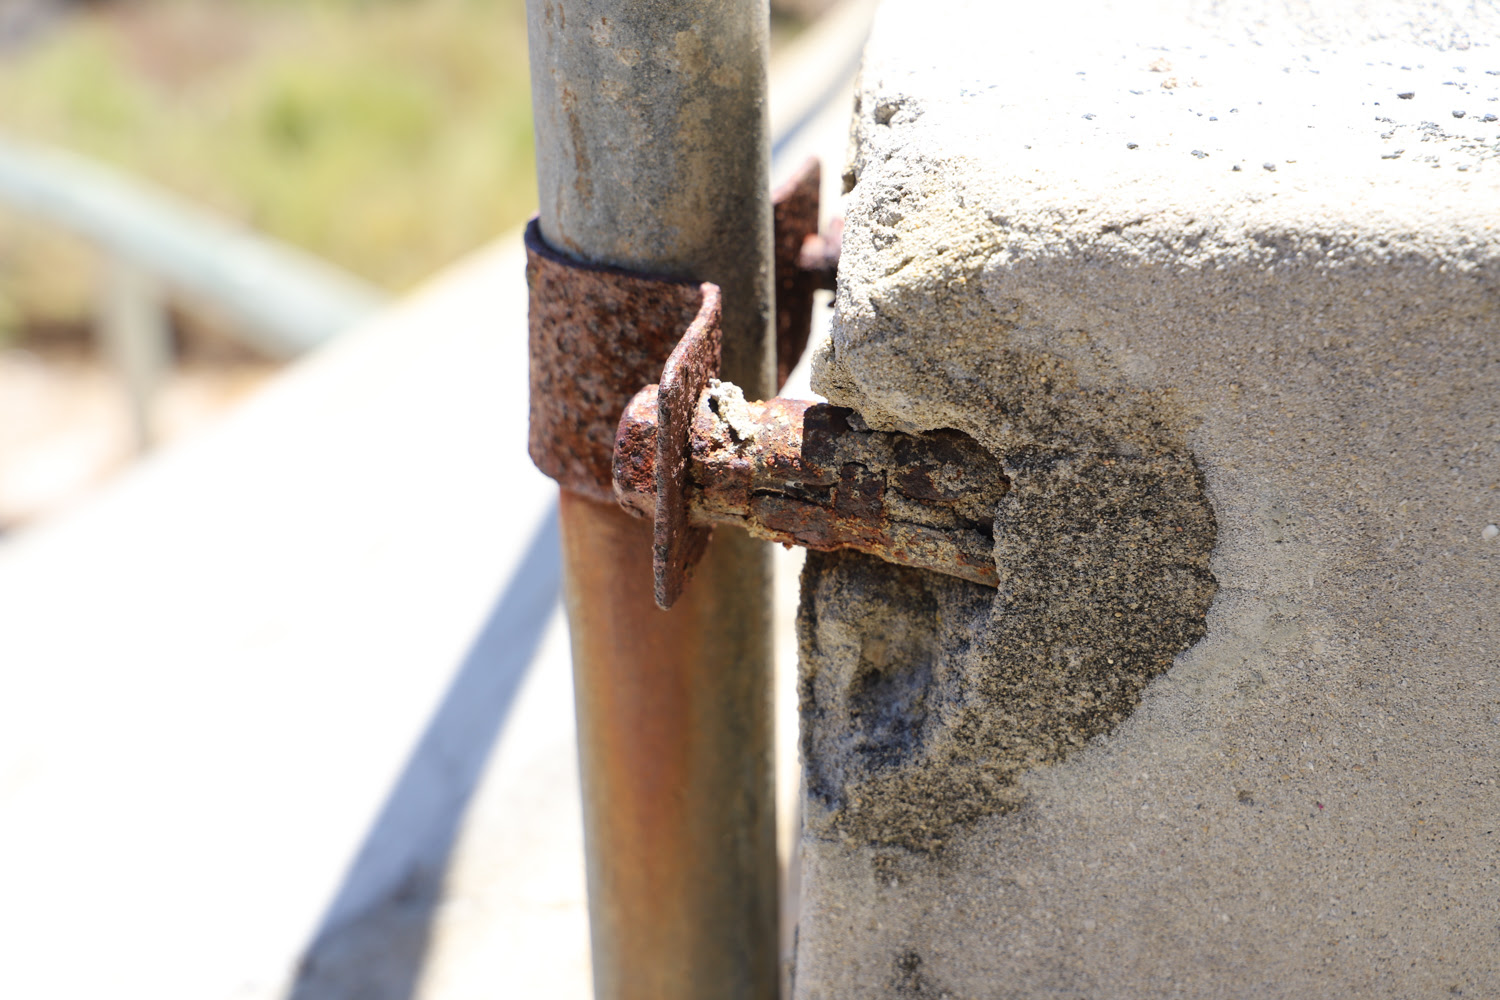 WSC galvanized corrosion on pole/bolt in concrete